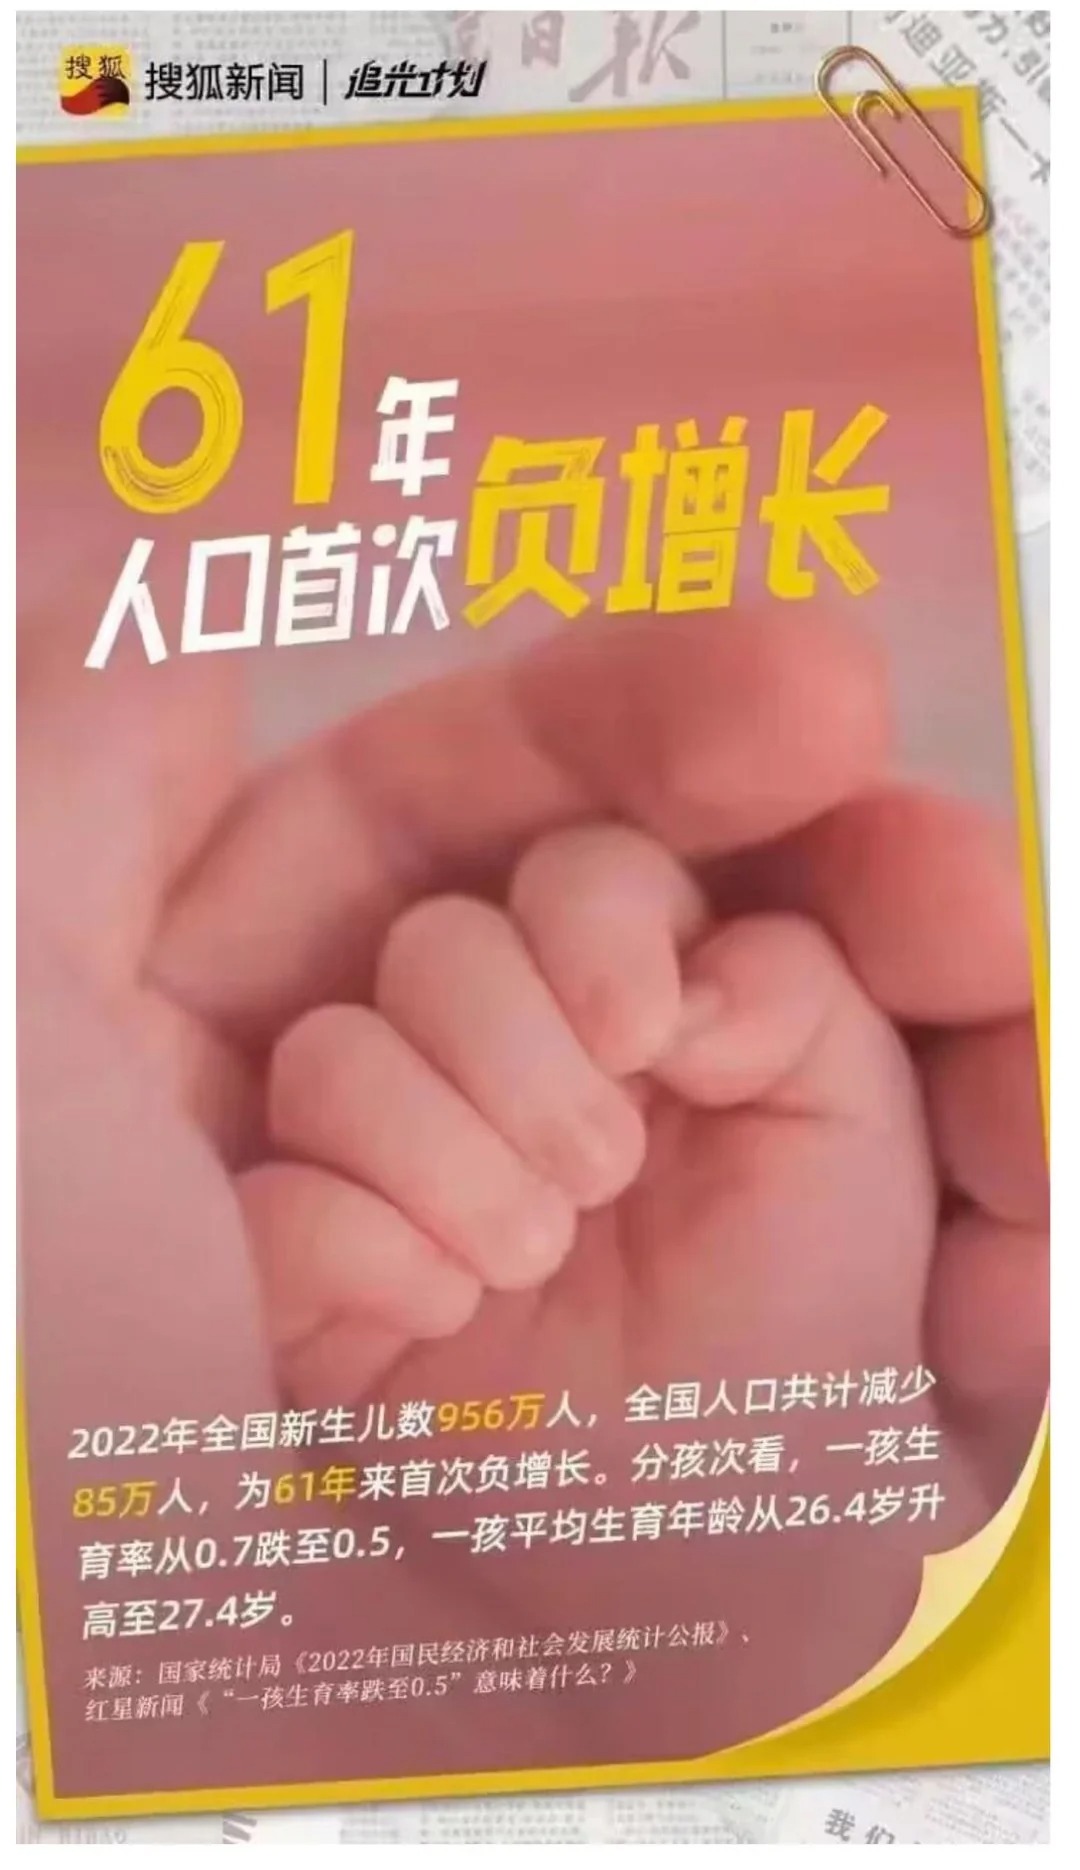 圖 搜狐引用官方數據連發9張海報 遭全網封殺